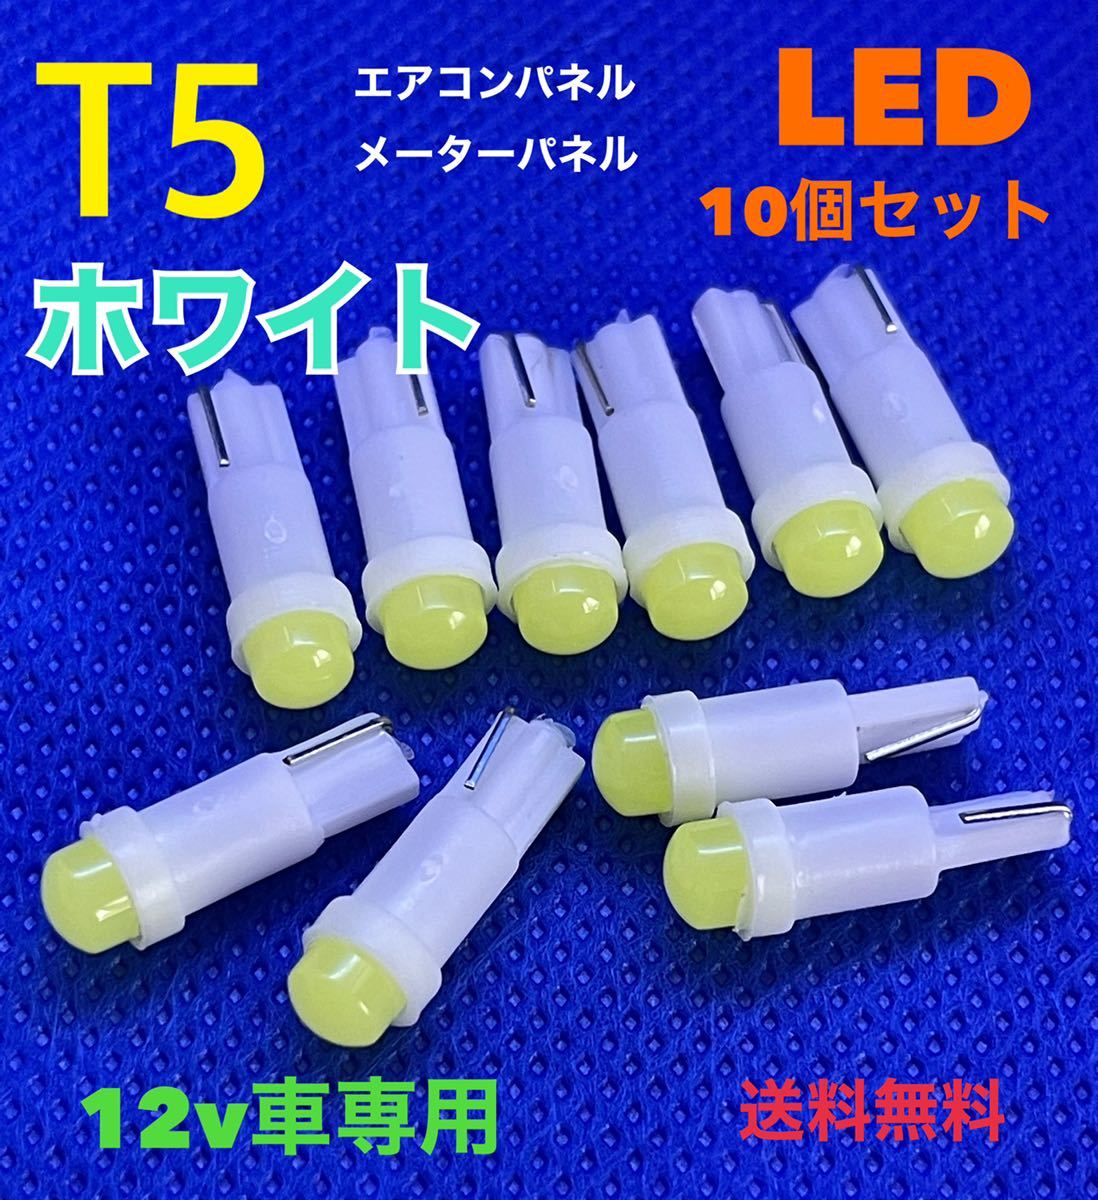 T5 ホワイト(白) LEDバルブ 【10個セット】 ウェッジ球 メーターパネル エアコンパネル メーター球 高輝度 長寿命 【送料無料】の画像1